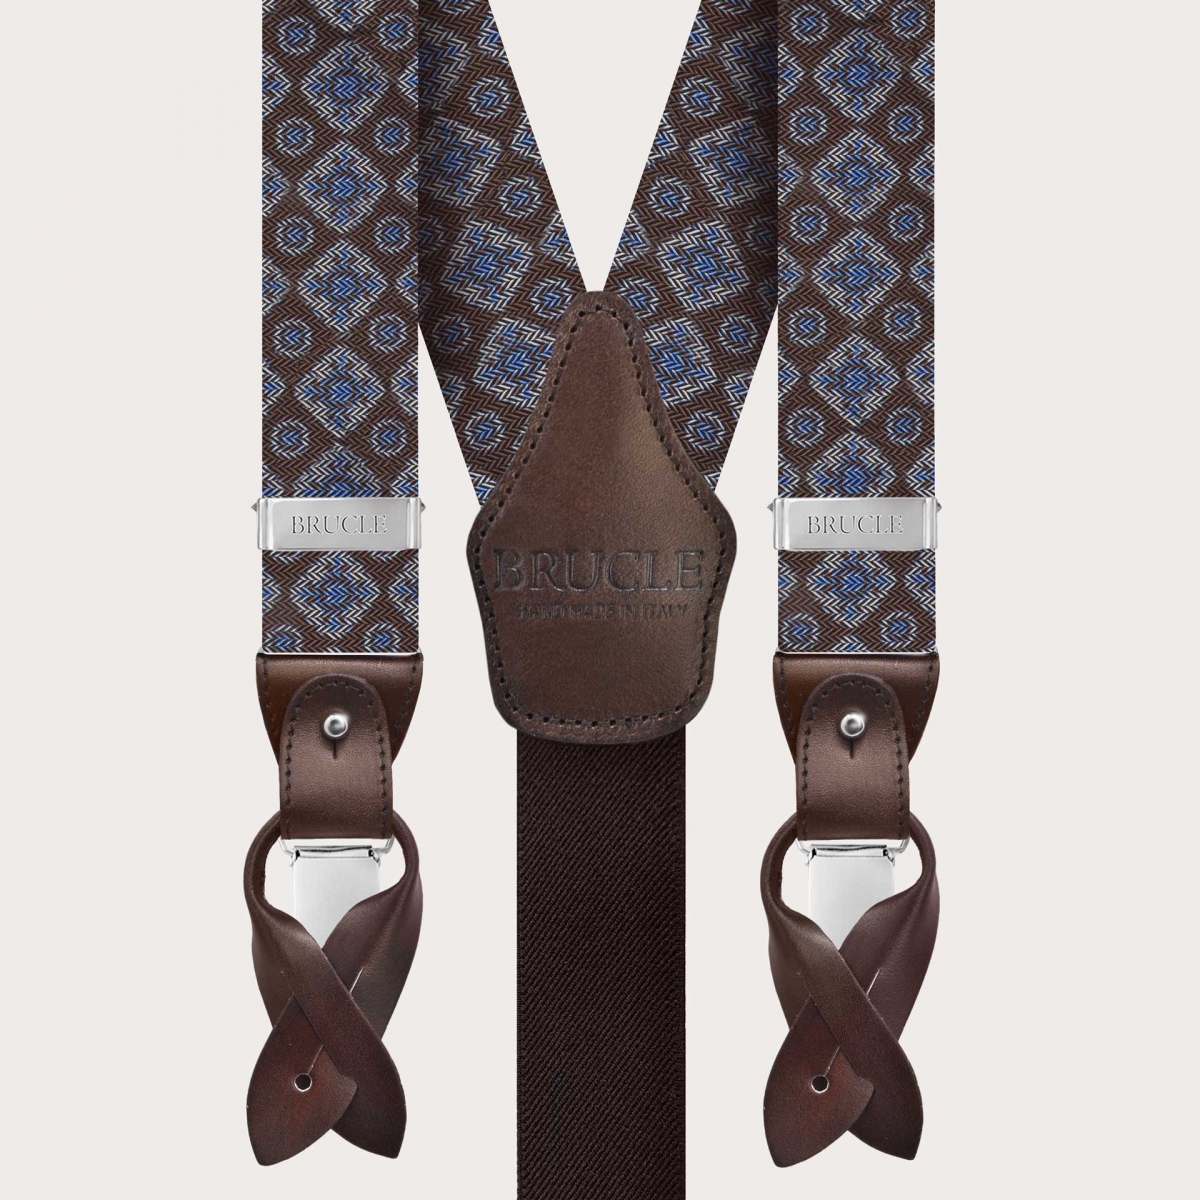 BRUCLE Exclusivas tirantes de seda marrón adornadas con un patrón geométrico